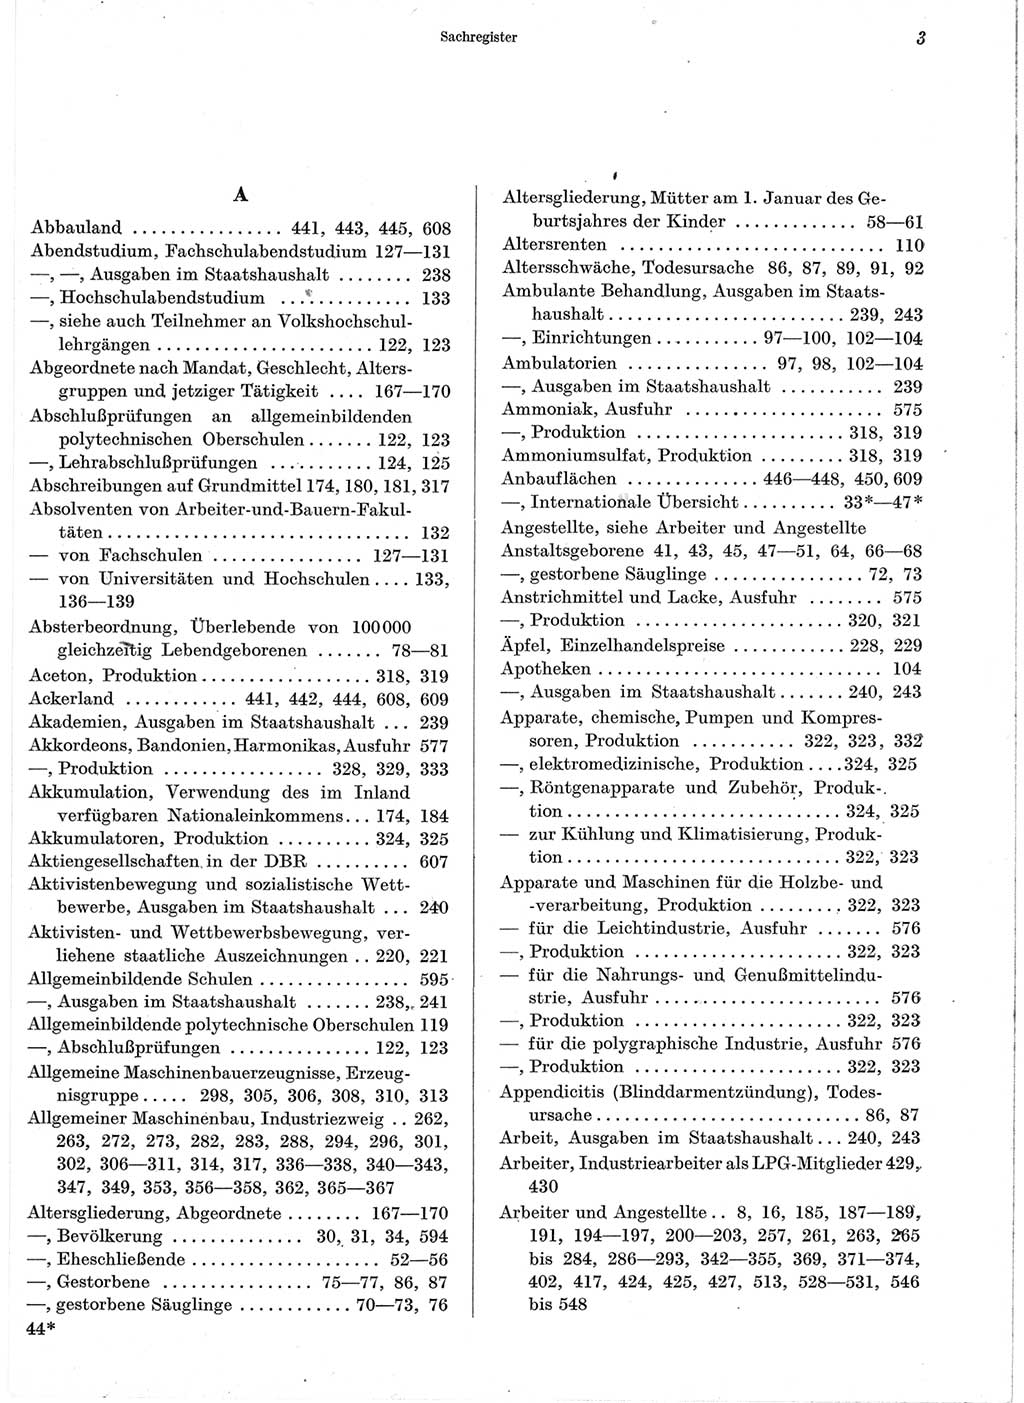 Statistisches Jahrbuch der Deutschen Demokratischen Republik (DDR) 1960-1961, Seite 3 (Stat. Jb. DDR 1960-1961, S. 3)